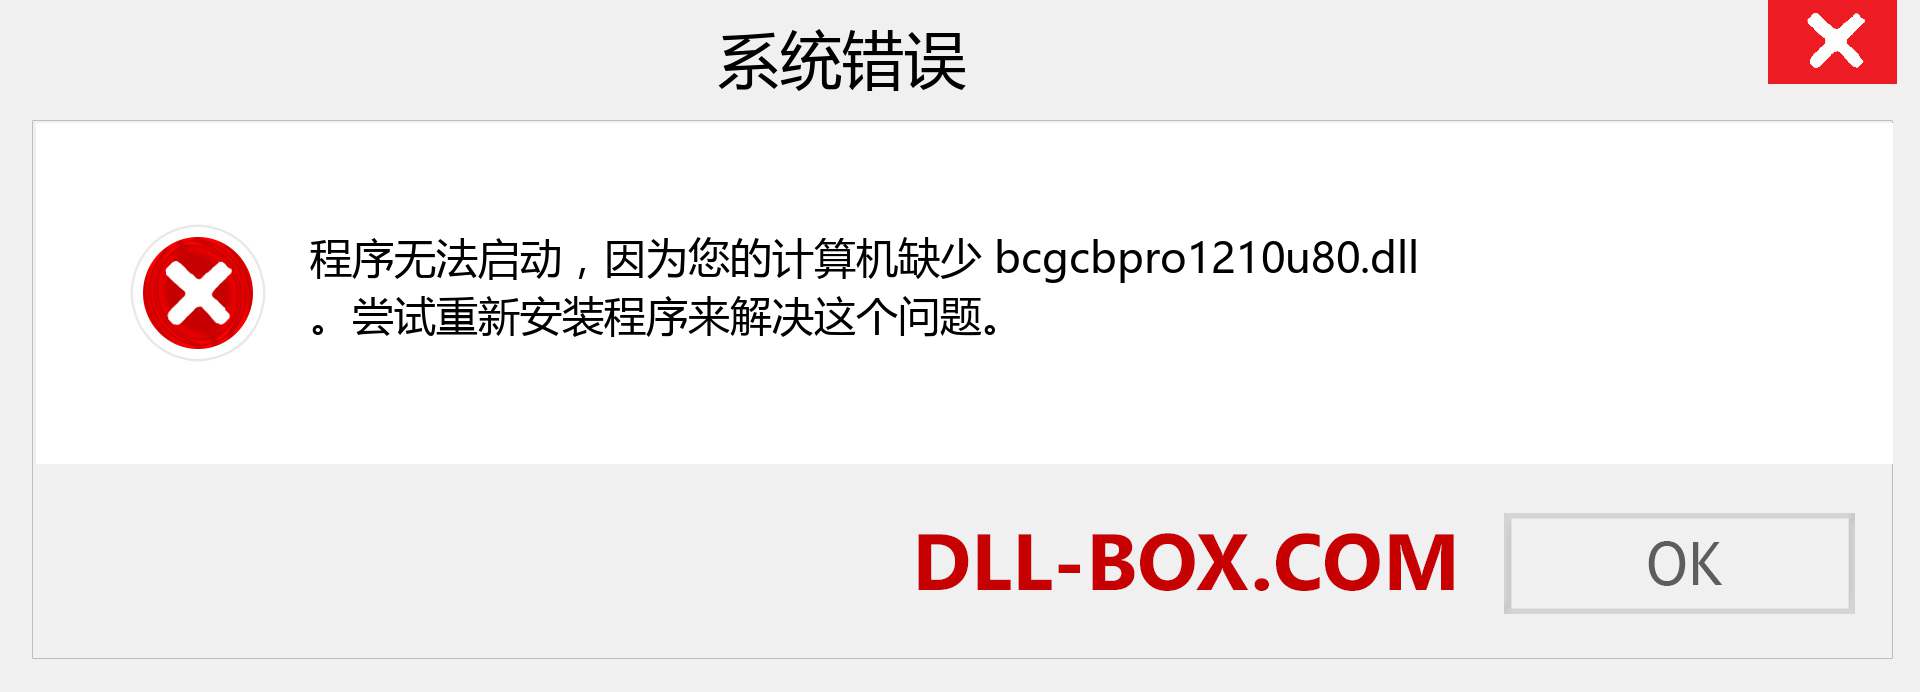 bcgcbpro1210u80.dll 文件丢失？。 适用于 Windows 7、8、10 的下载 - 修复 Windows、照片、图像上的 bcgcbpro1210u80 dll 丢失错误